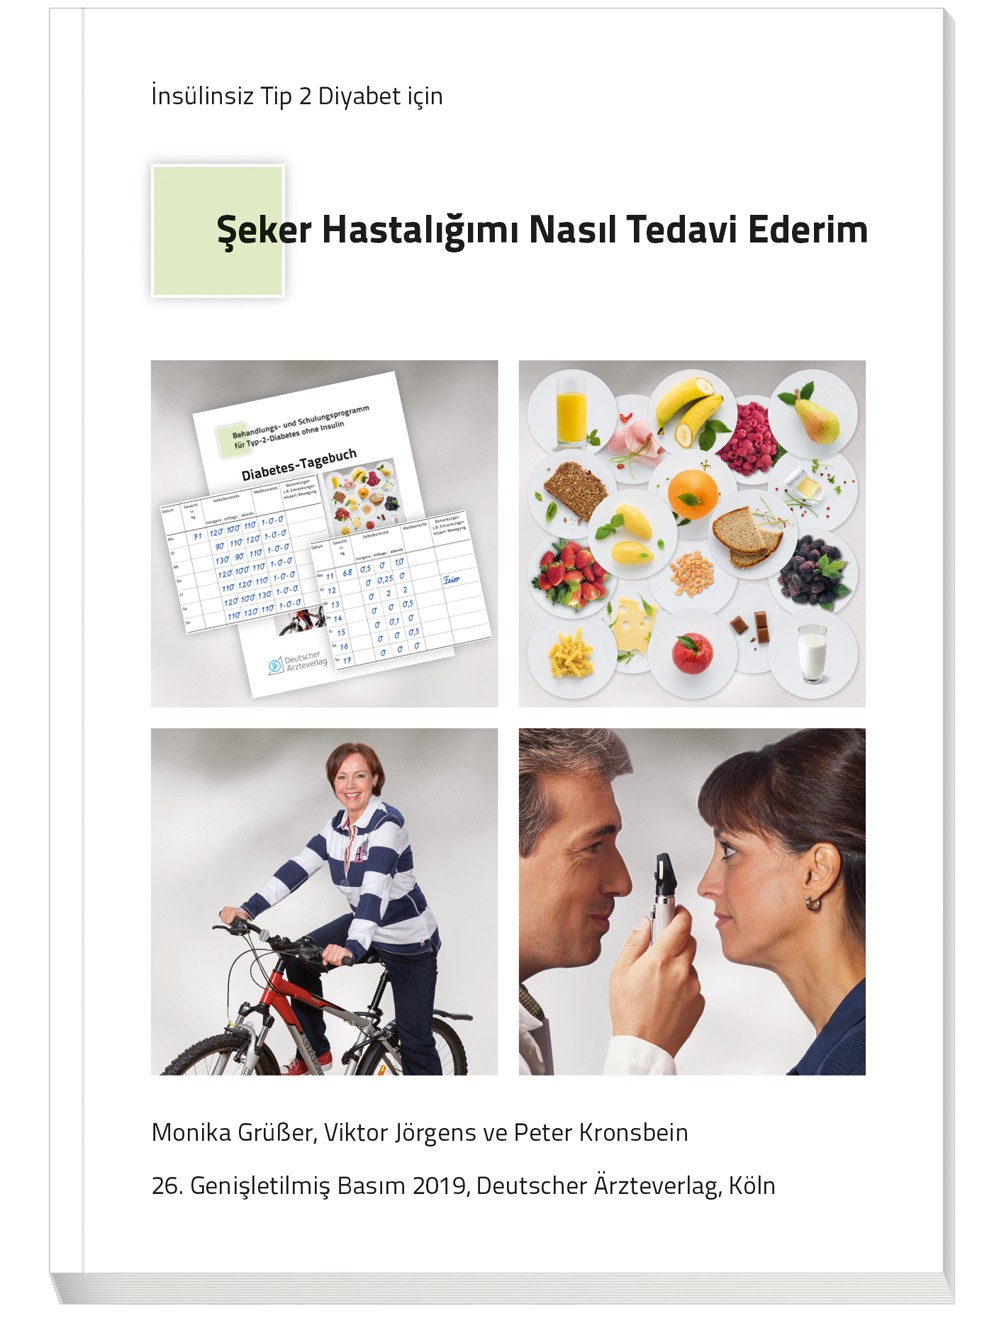 Türkisches Patientenbuch „Therapie ohne Insulin" - Seker hastaligimi nasil tedavi ederim?